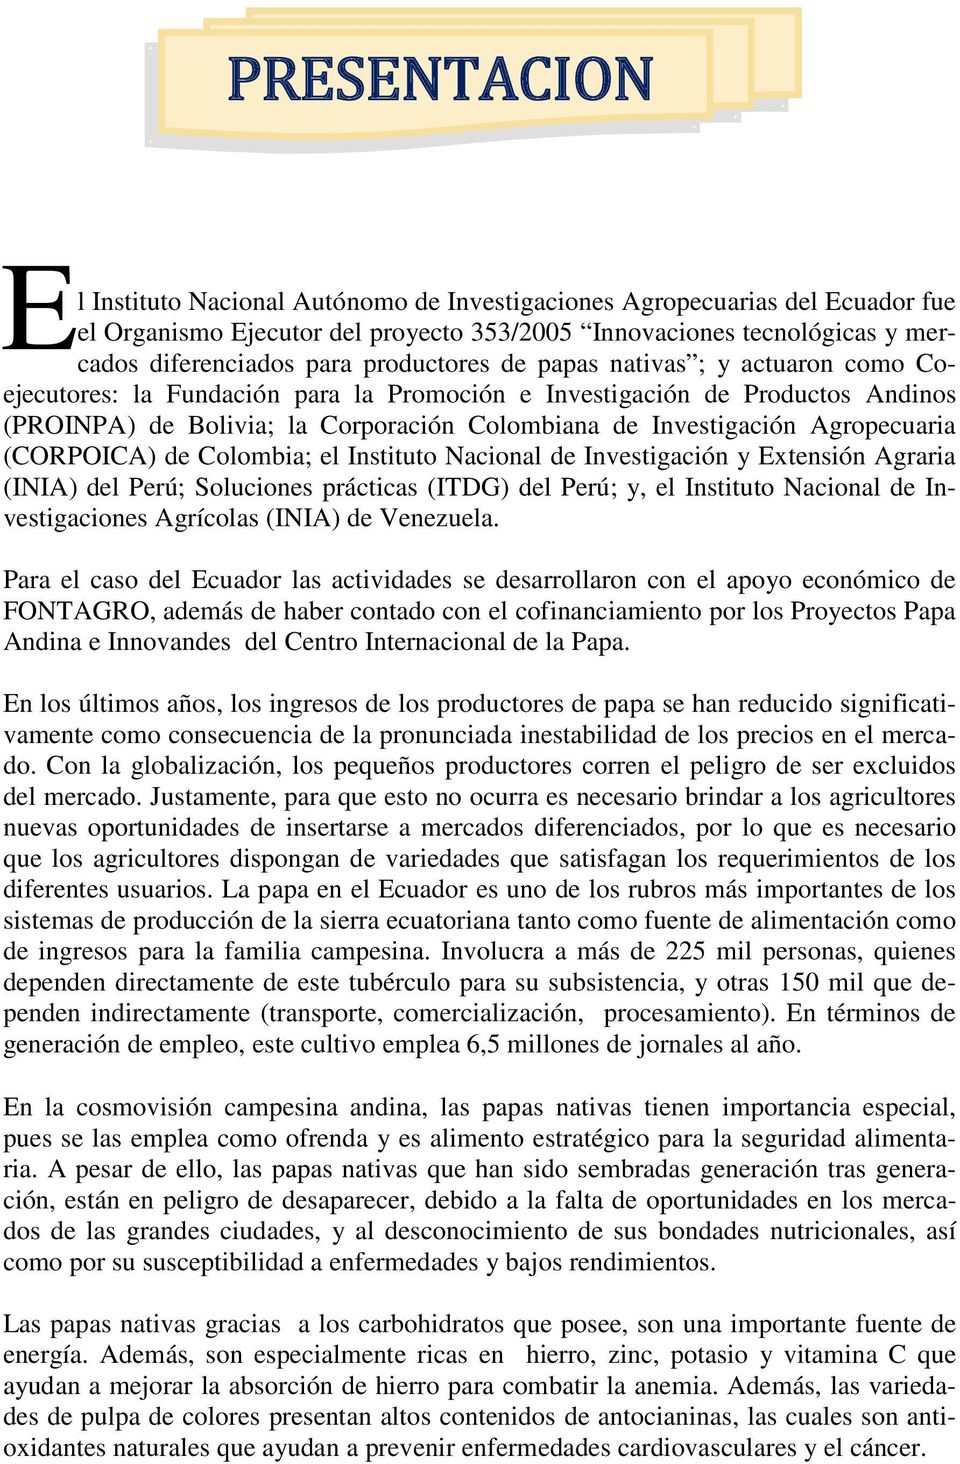 Agropecuaria (CORPOICA) de Colombia; el Instituto Nacional de Investigación y Extensión Agraria (INIA) del Perú; Soluciones prácticas (ITDG) del Perú; y, el Instituto Nacional de Investigaciones